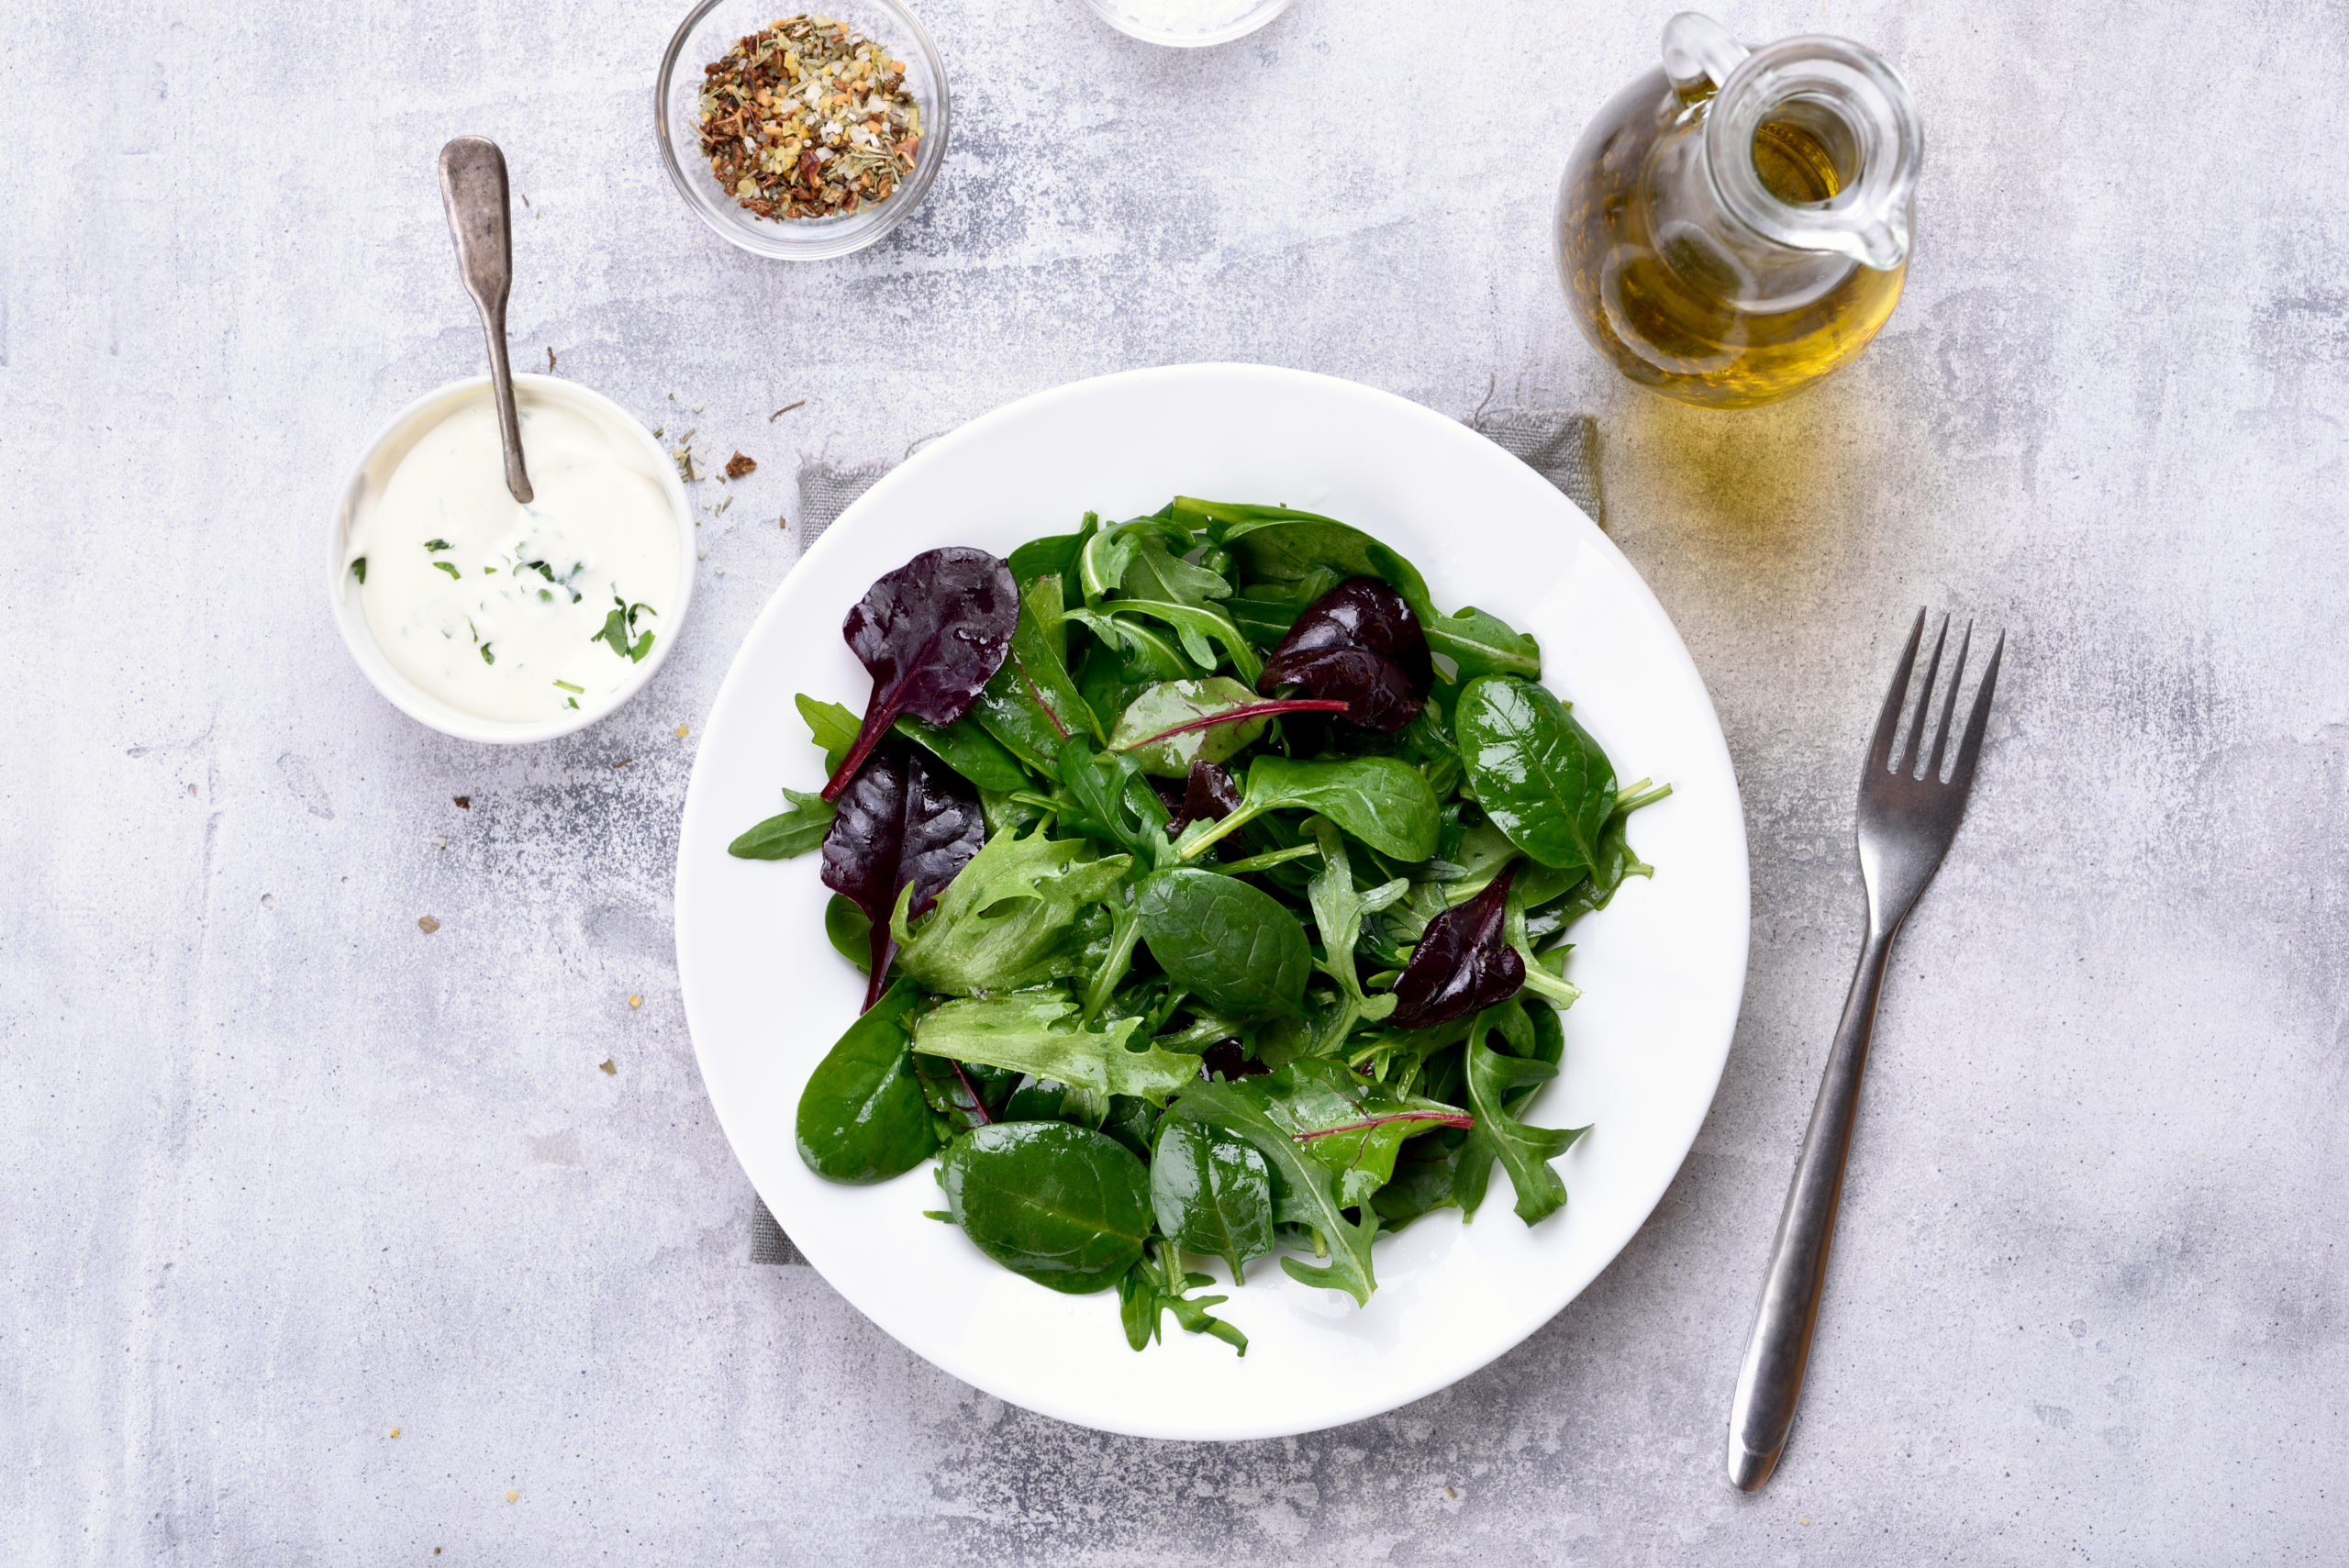 Lire la suite à propos de l’article Les différents types de salade et leur utilisation dans les burgers